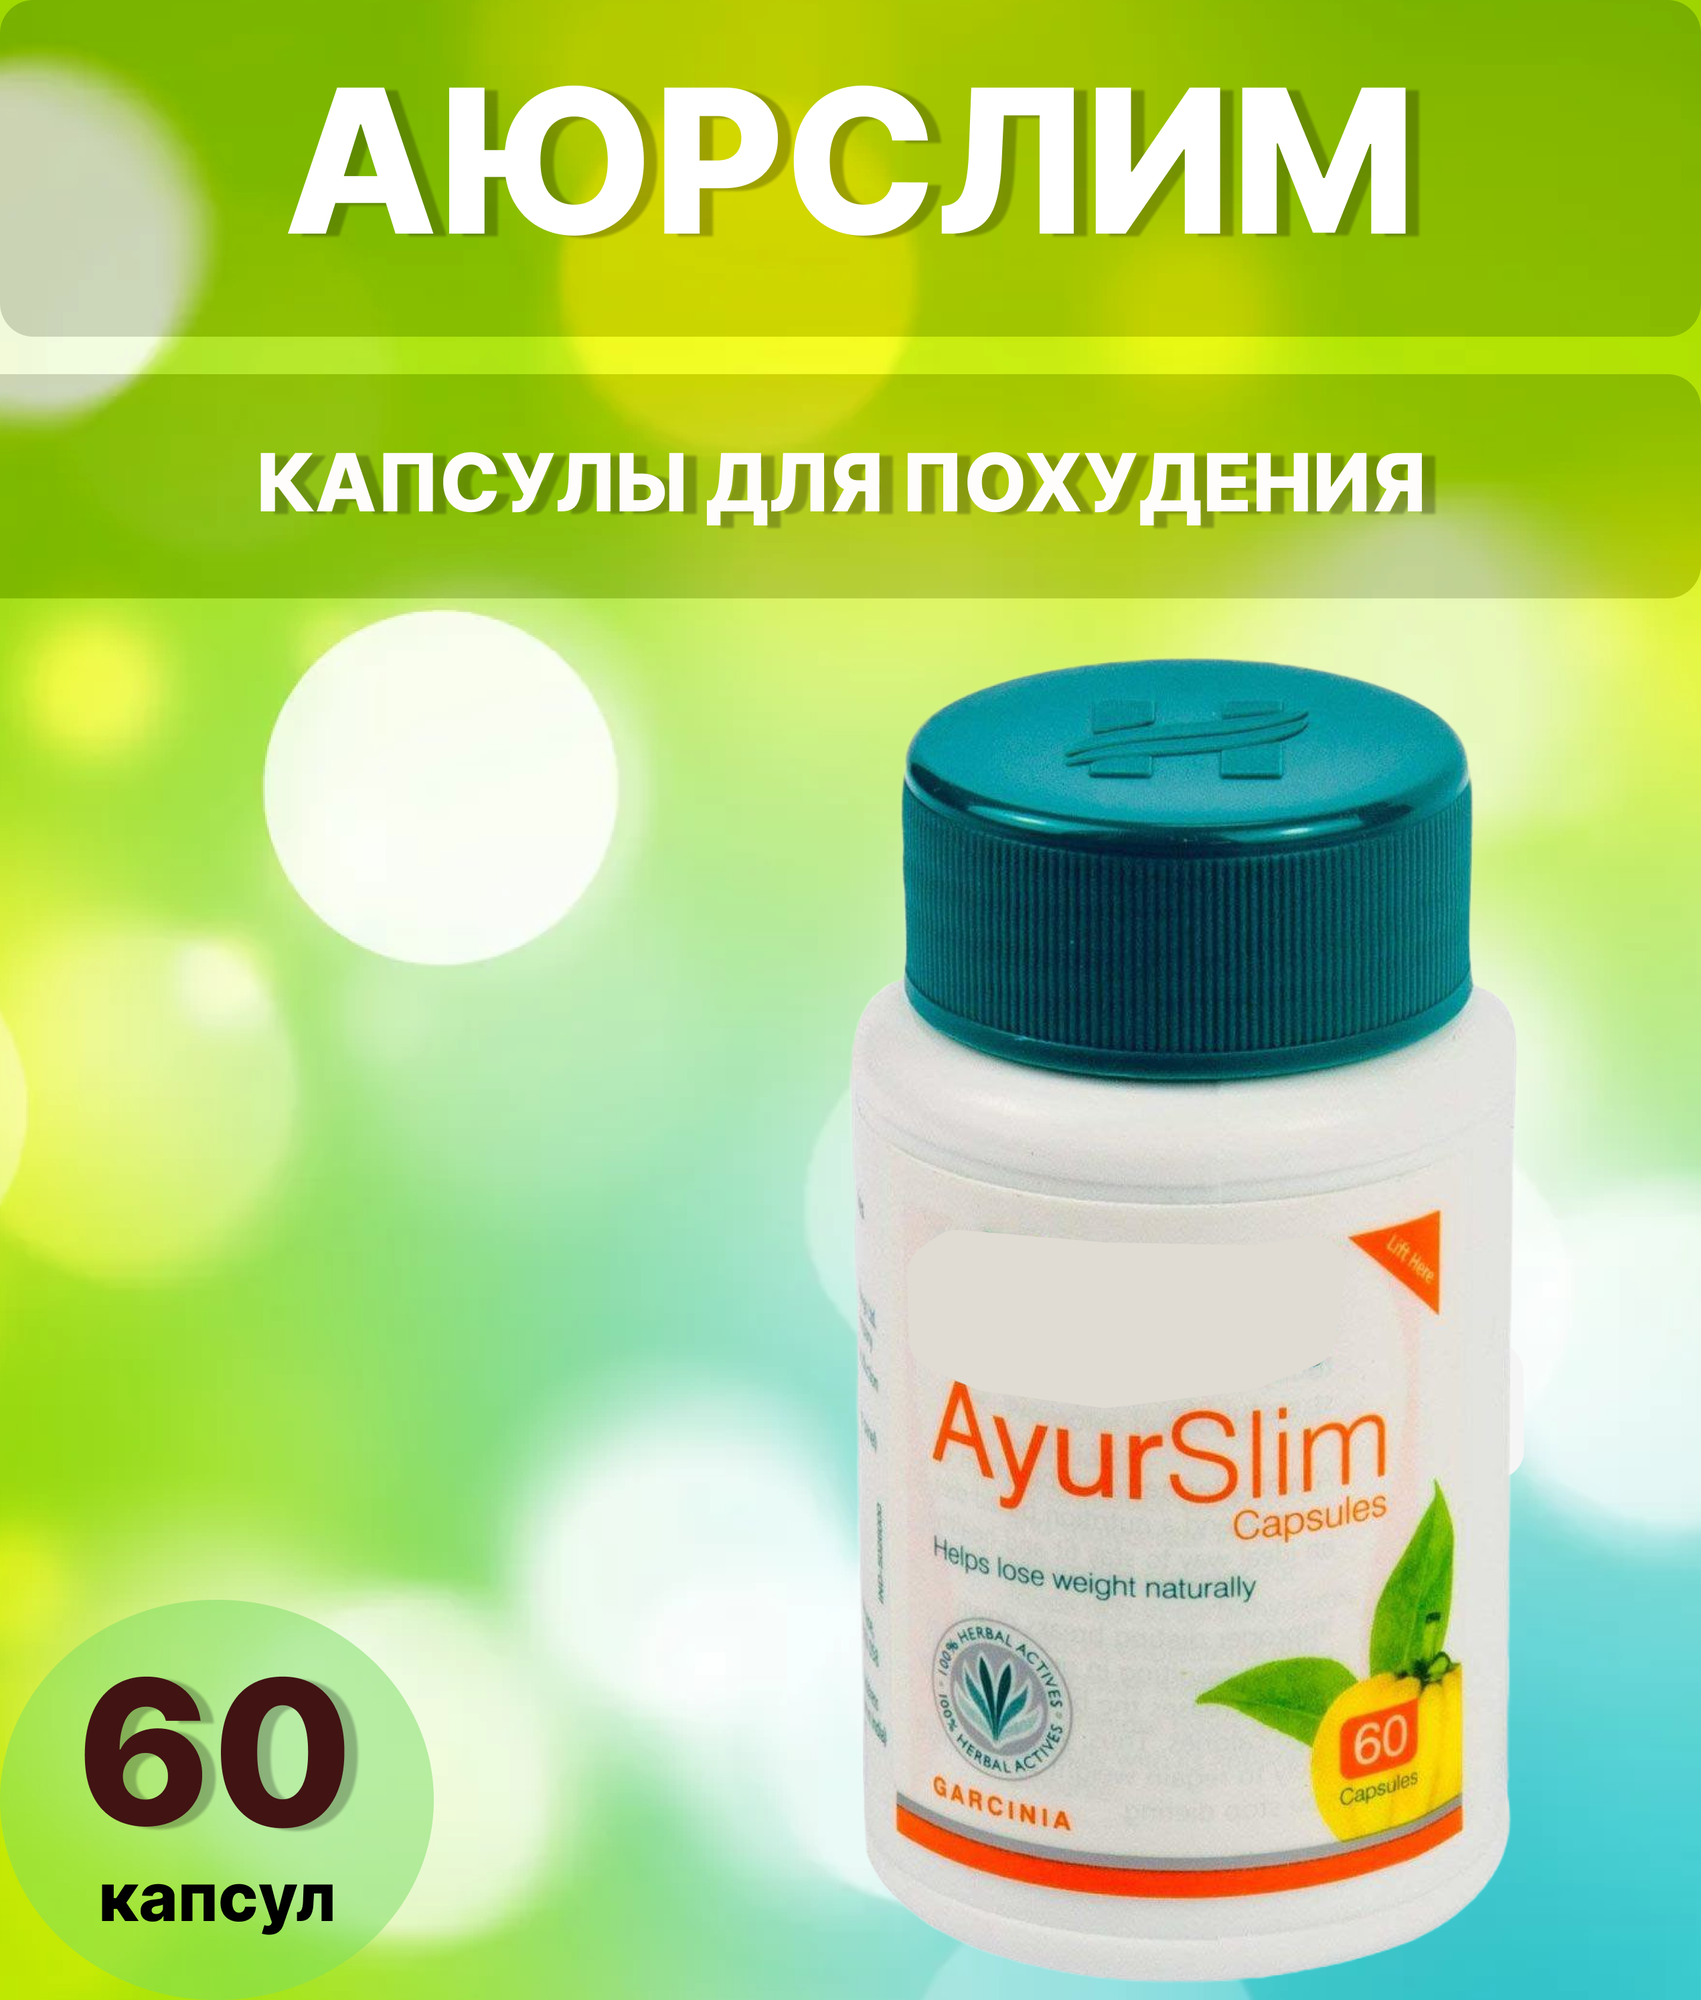 Аюрслим Ayurslim 60 табл, Похудение/Контроль веса/Стройность